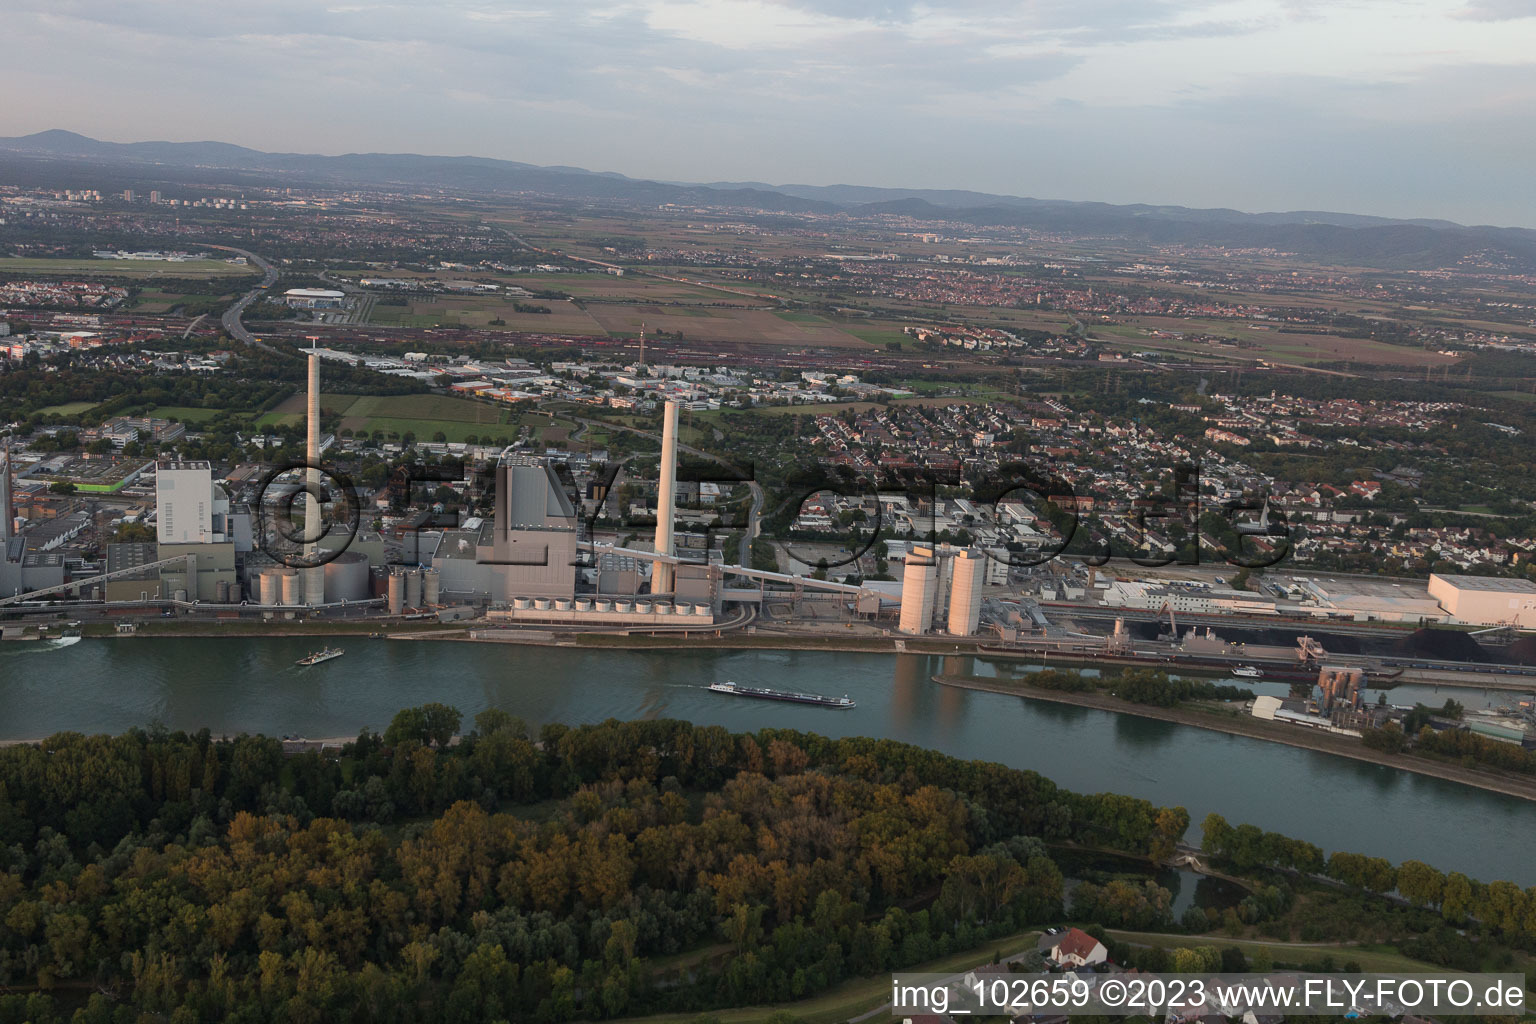 Luftbild von Großkraftwerk Mannheim am Rhein bei Neckarau im Bundesland Baden-Württemberg, Deutschland